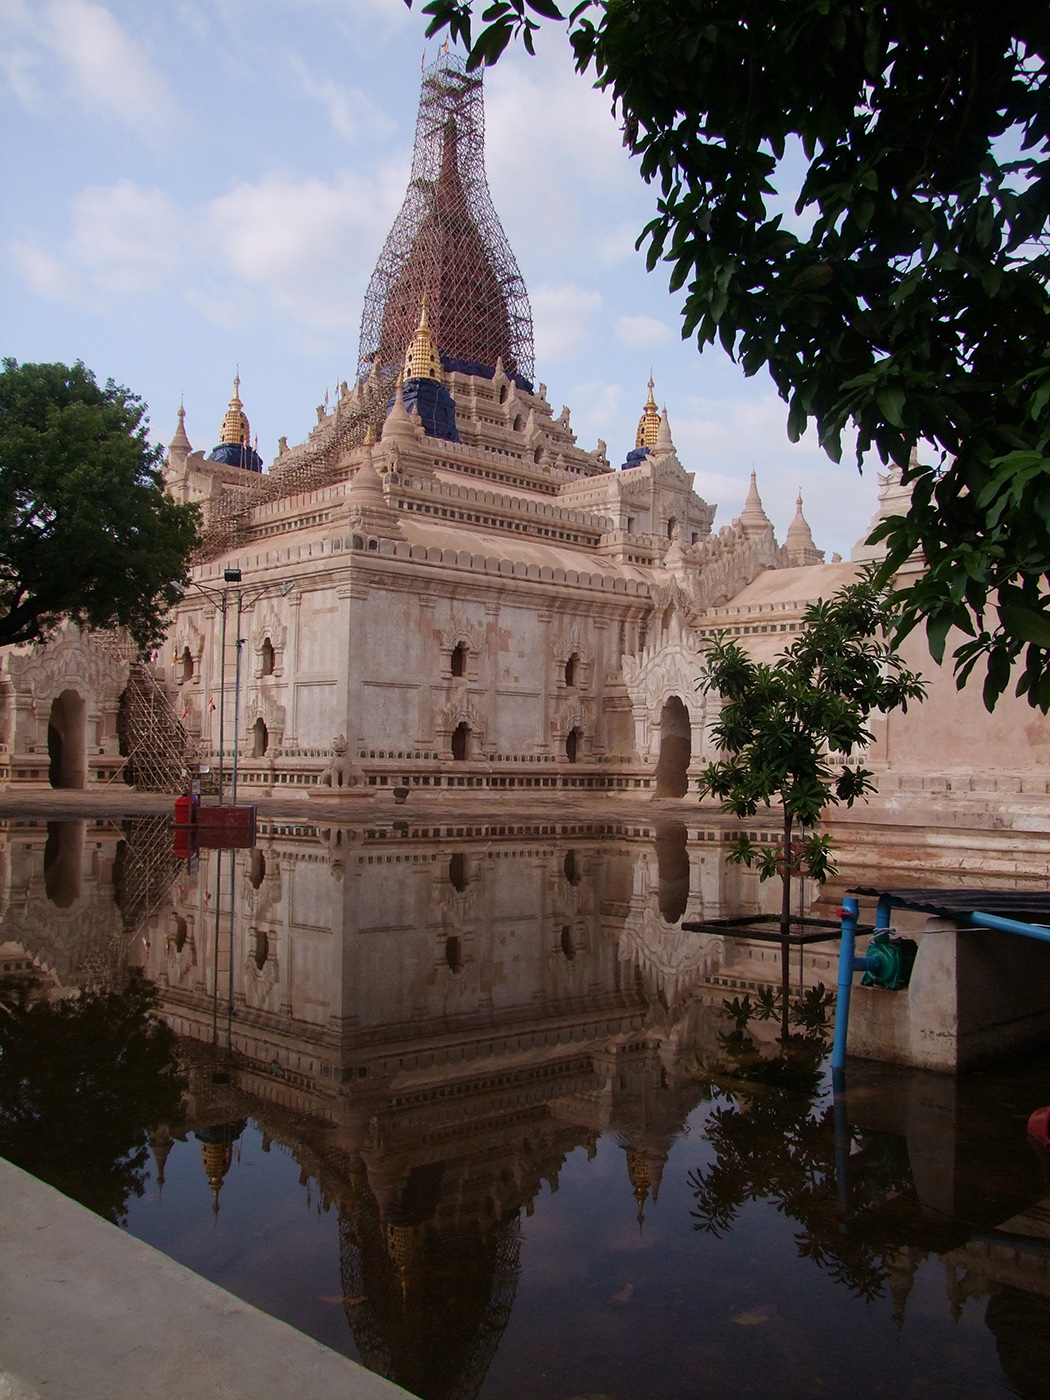 Shwemanwdaw Pagoda